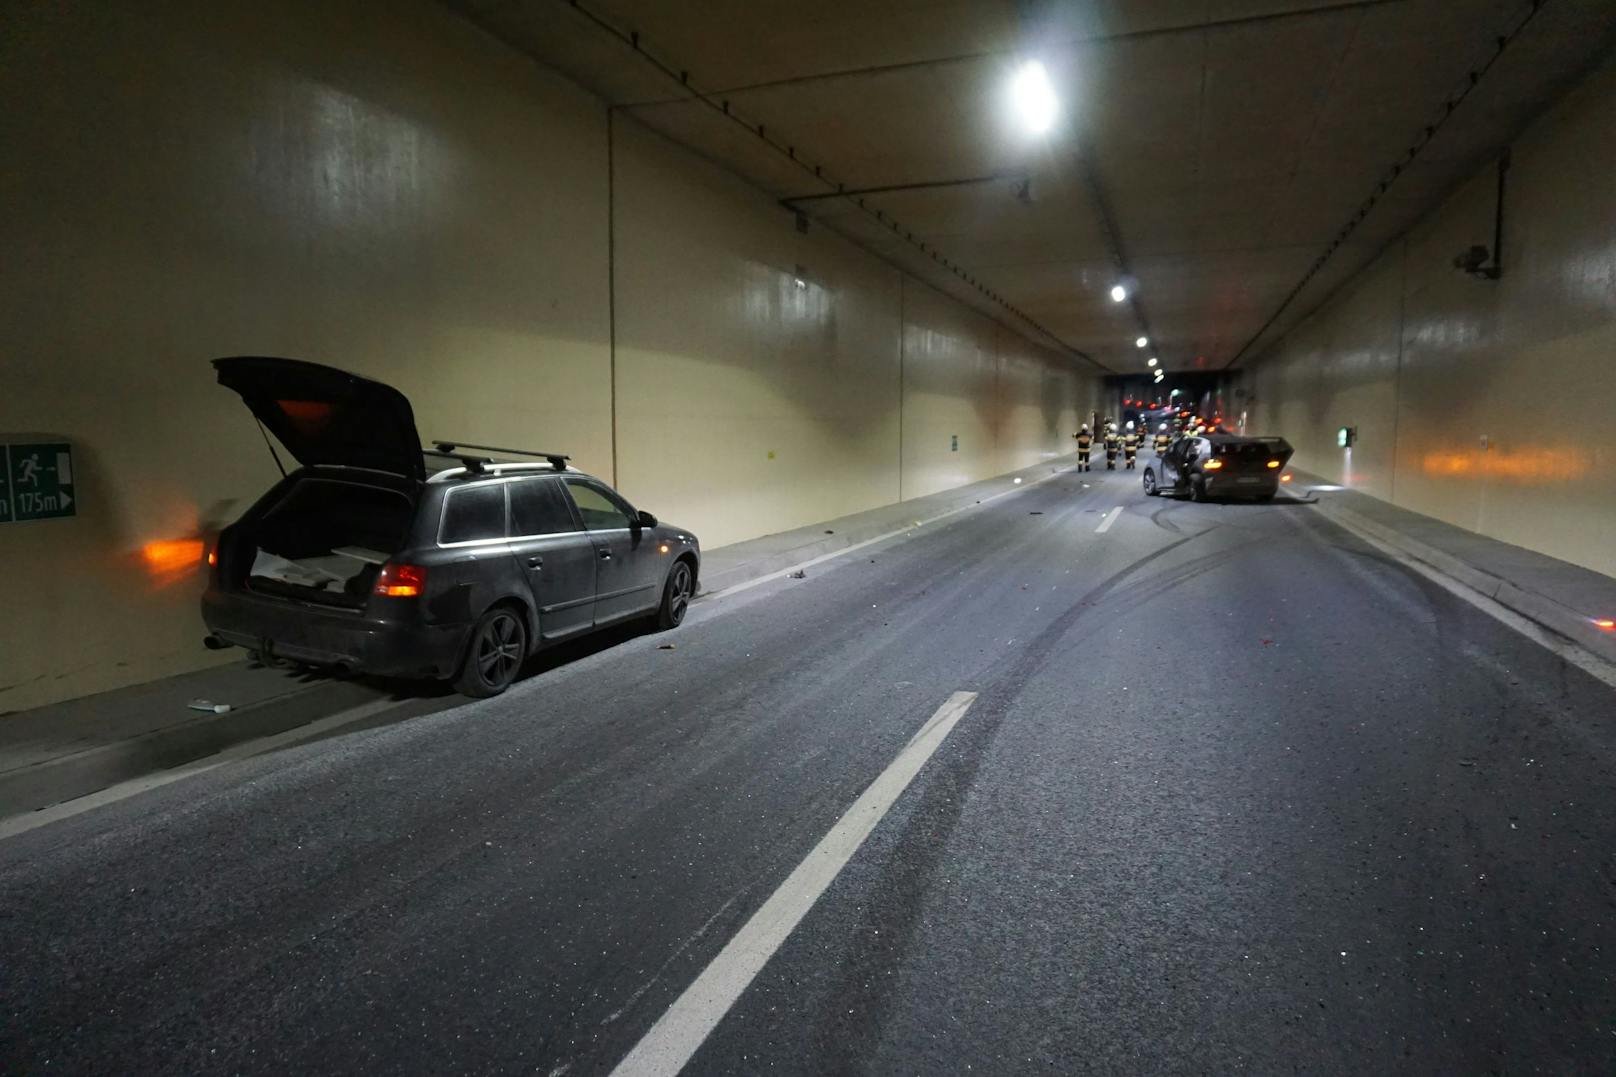 Ein nachfolgender 28-jähriger Autofahrer konnte einer Kollision gerade noch entgehen. Er bremste stark ab und lenkte sein Fahrzeug in die Tunnelwand. Bei dem Aufprall wurde der leicht verletzt.